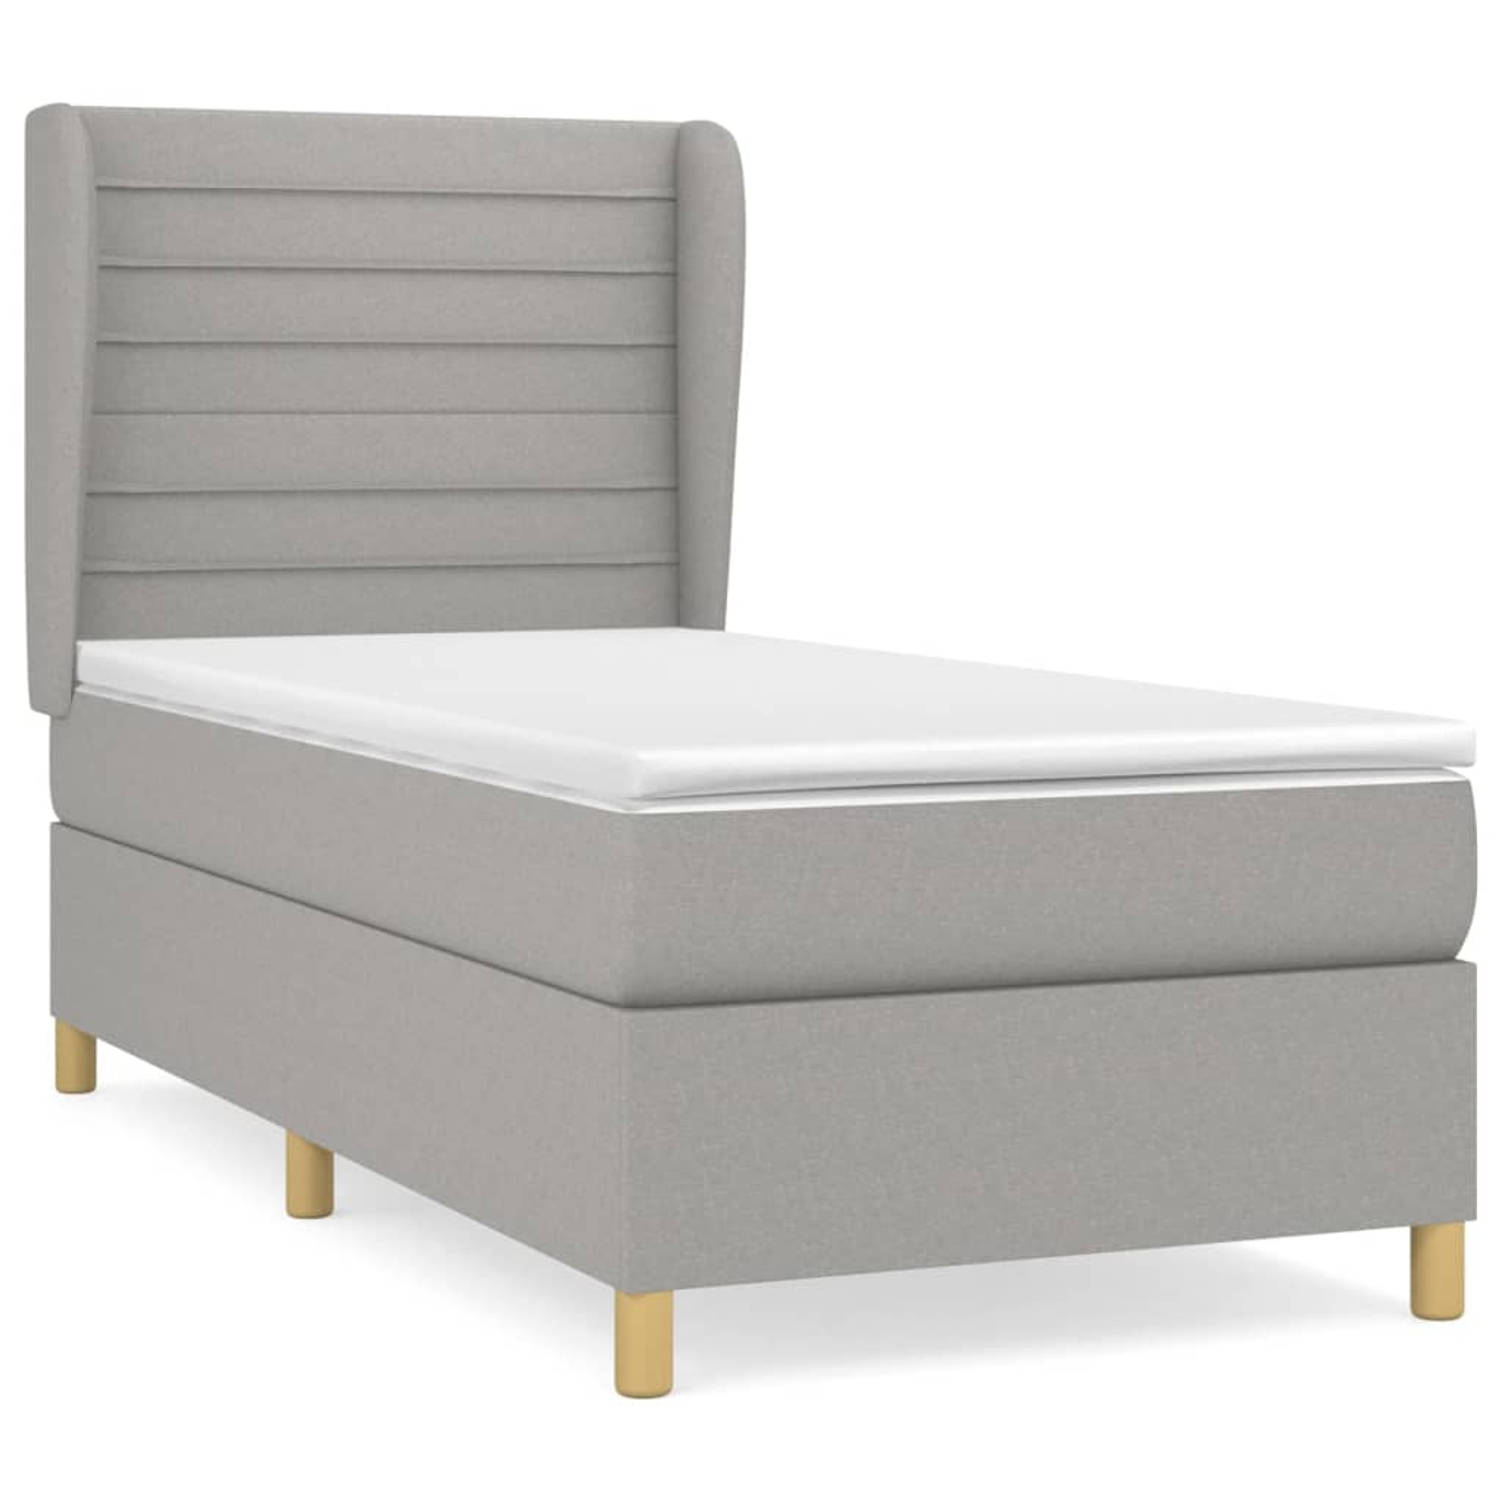 The Living Store Bed - Pocketvering matras - Middelharde ondersteuning - Huidvriendelijk topmatras - 203x103x118/128cm